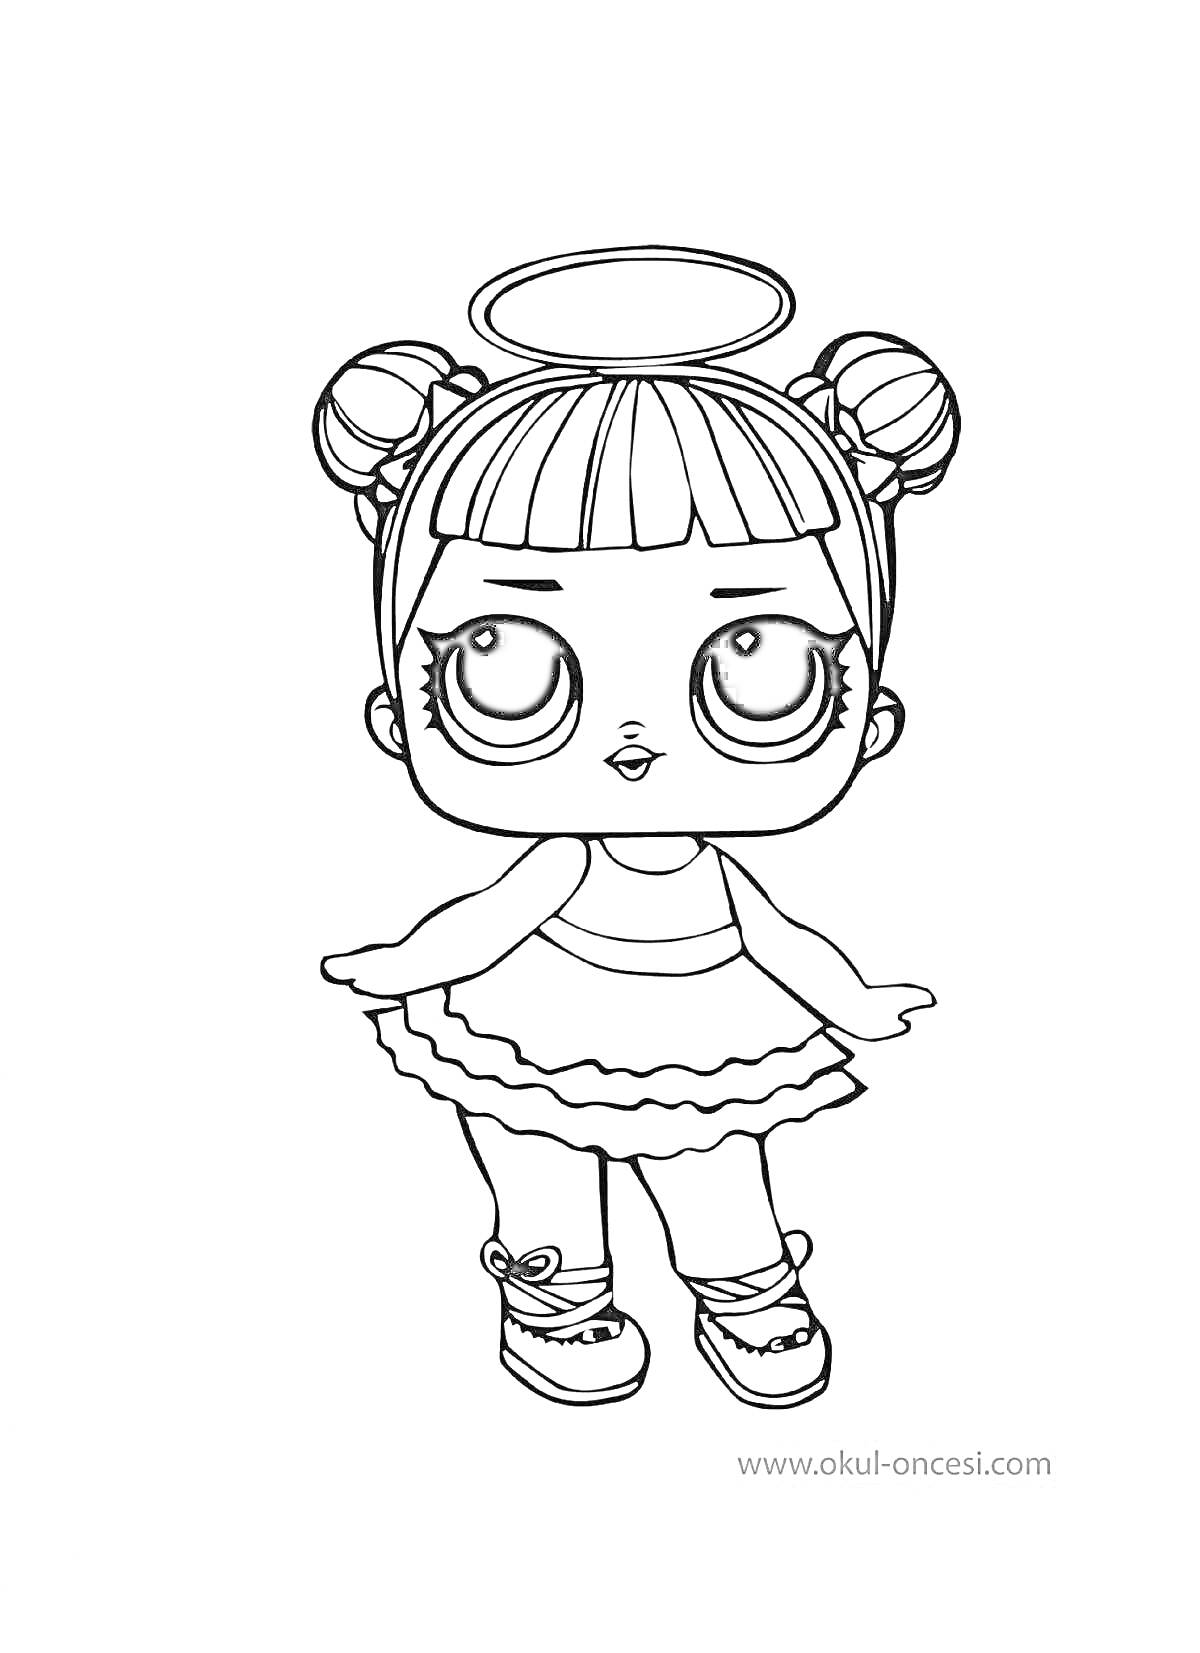 Раскраска Девочка-кукла ЛОЛ с двойным пучком на голове, в платье с рюшами и кроссовках